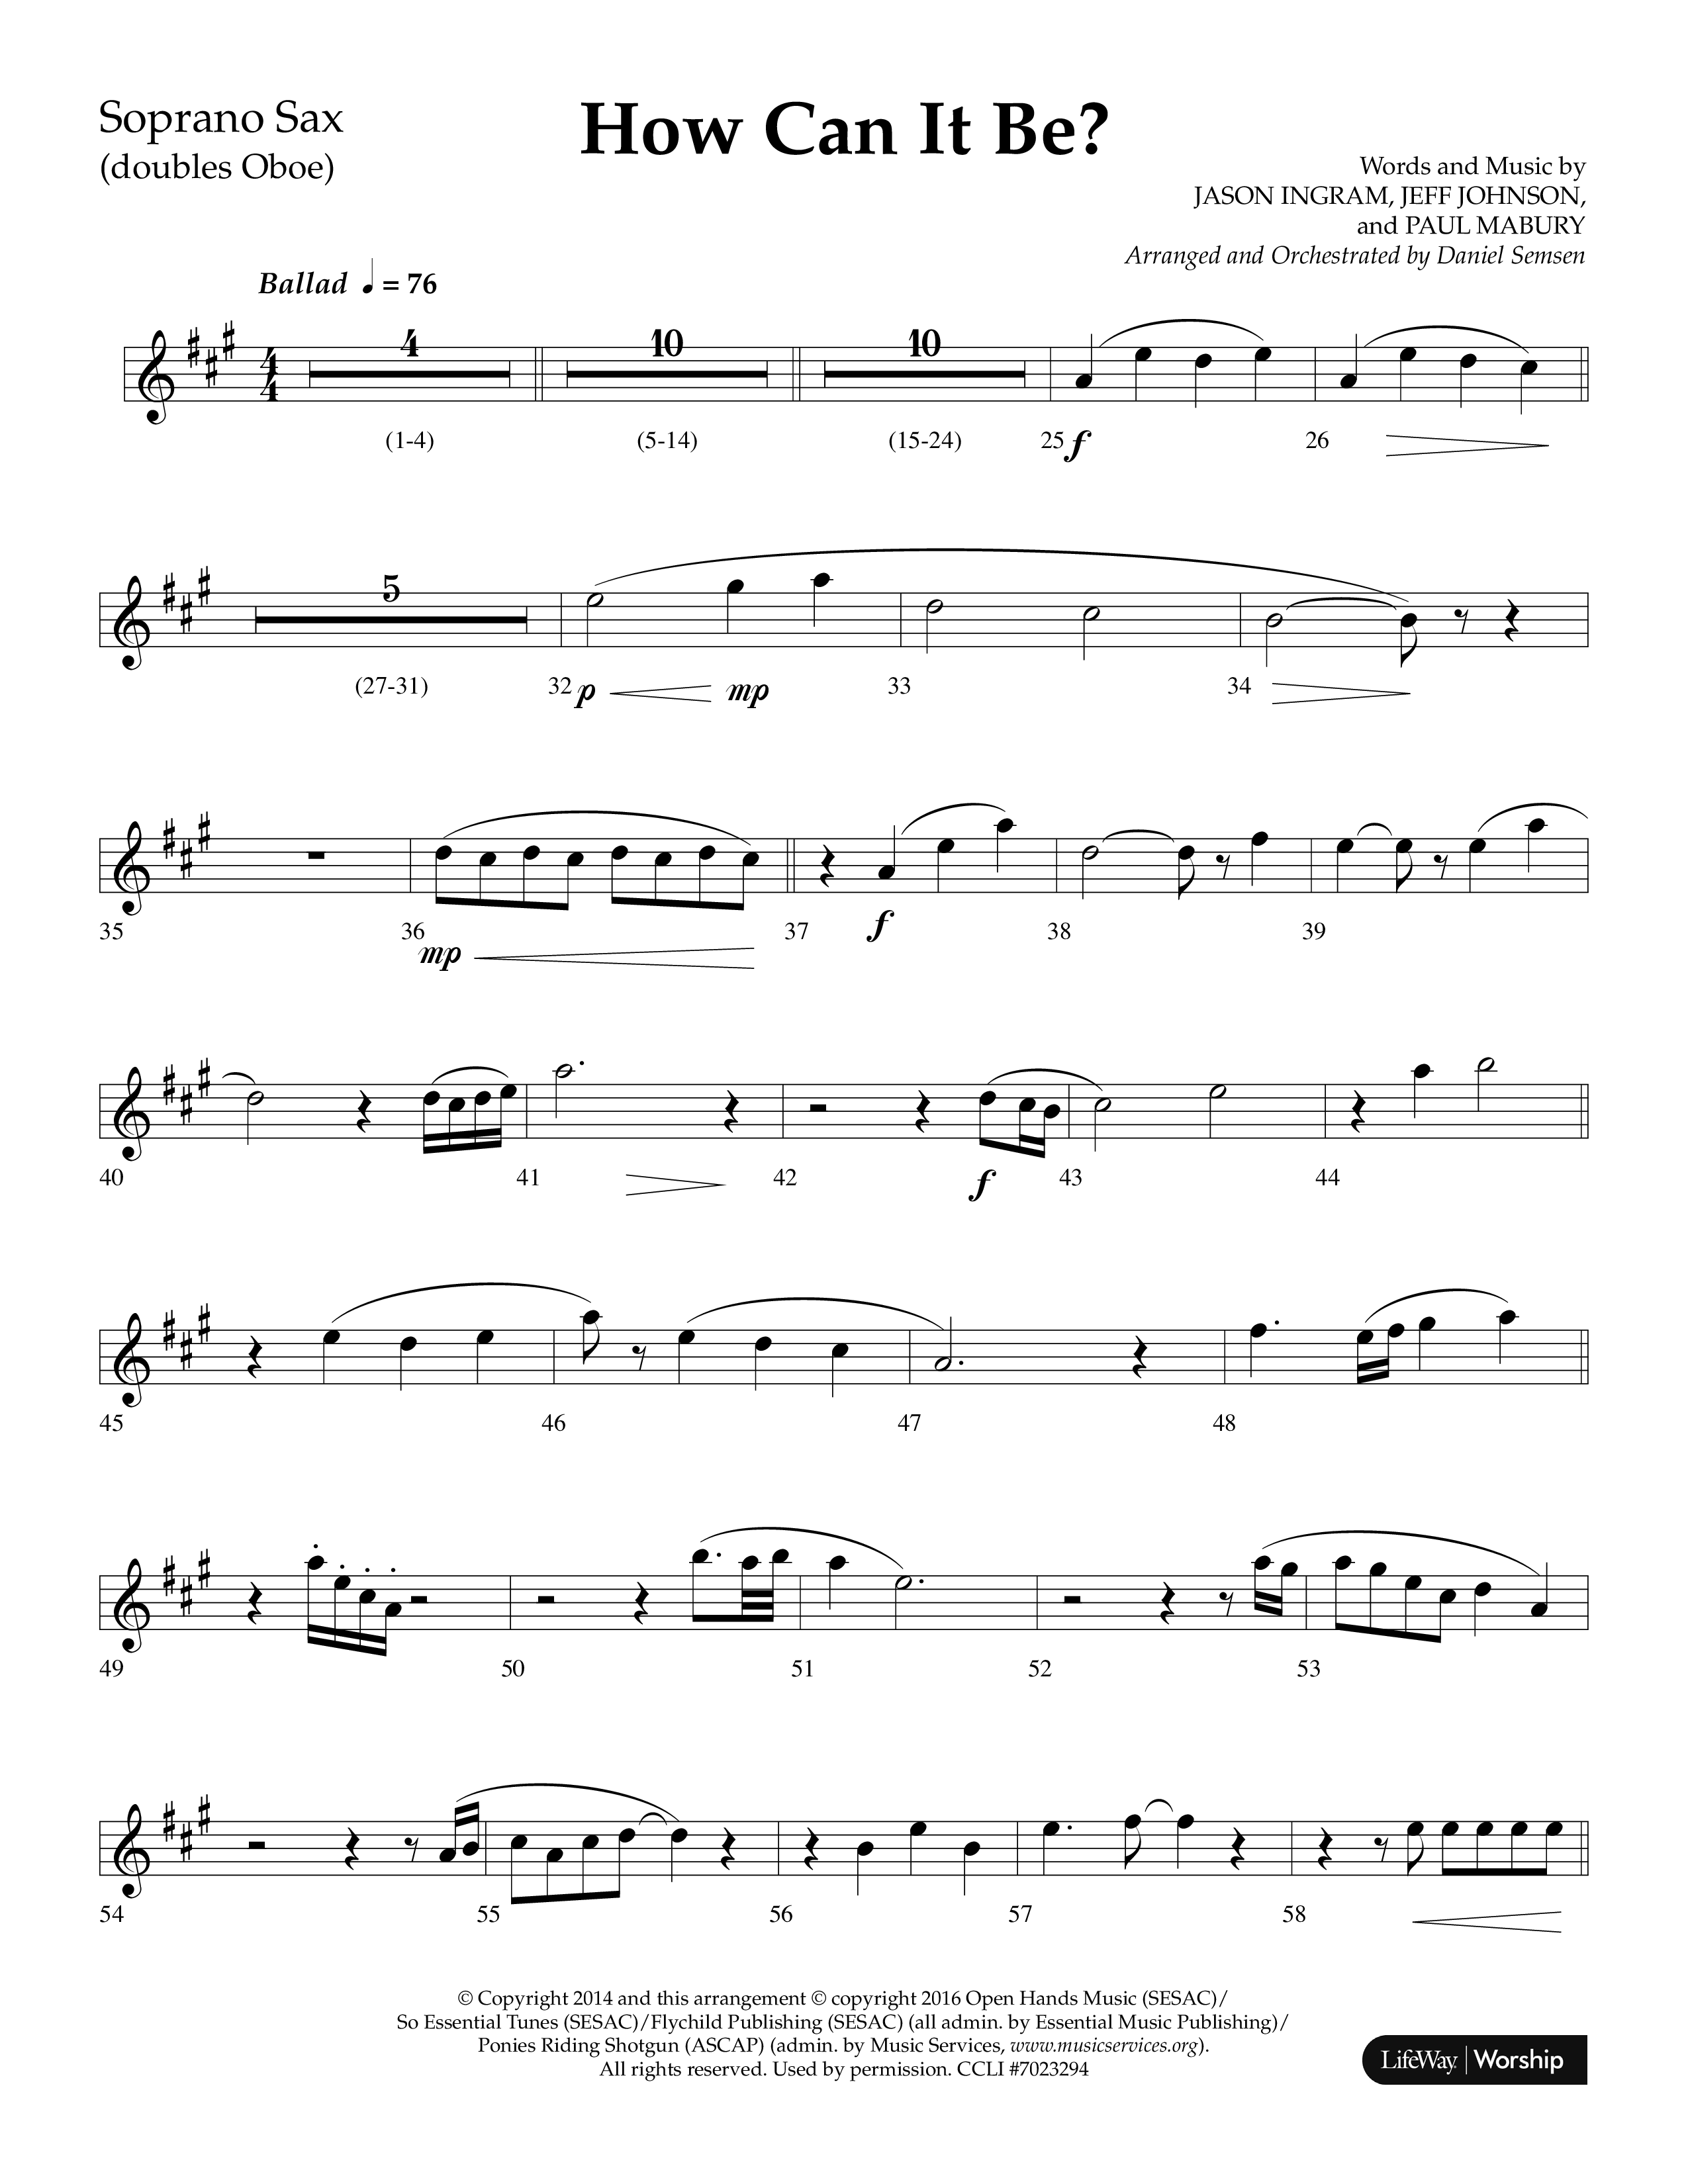 How Can It Be (Choral Anthem SATB) Soprano Sax (Lifeway Choral / Arr. Daniel Semsen)